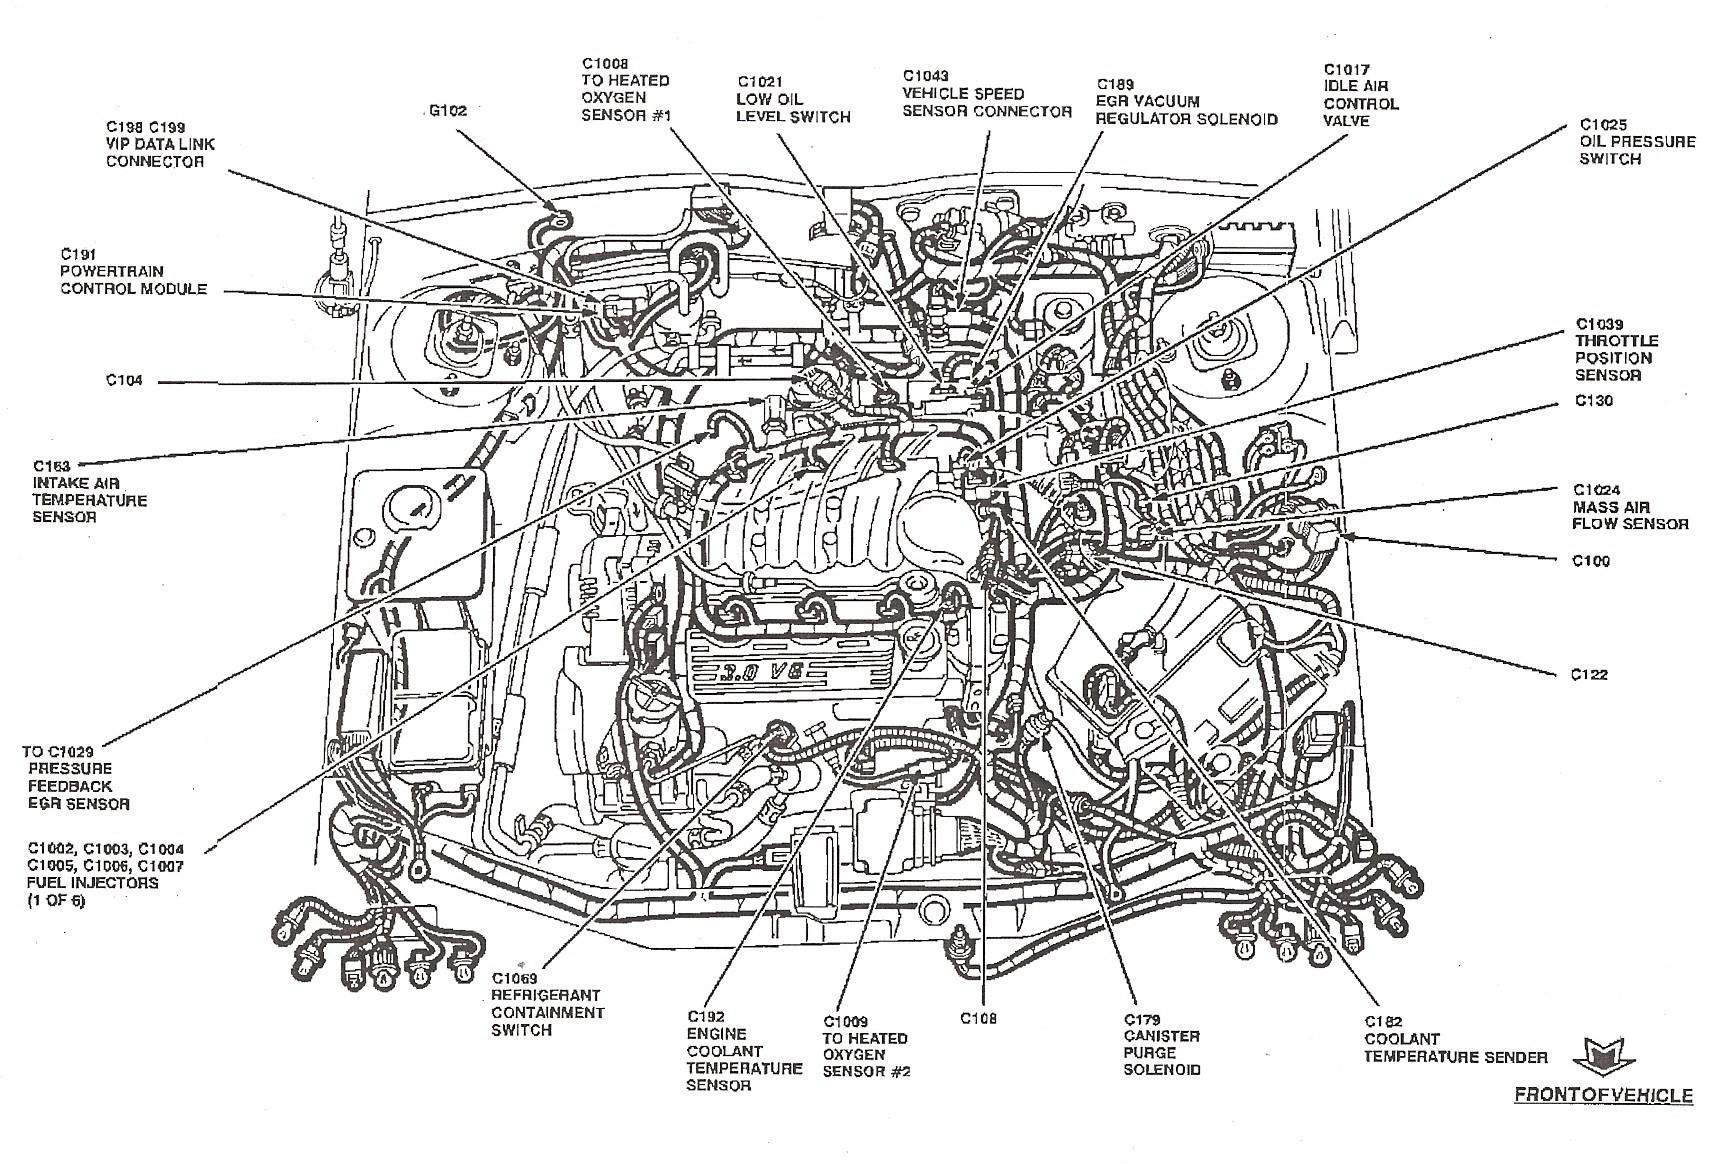 2001 ford Focus Engine Diagram 2005 ford Taurus Fuel System Diagram Wiring Diagram Used Of 2001 ford Focus Engine Diagram